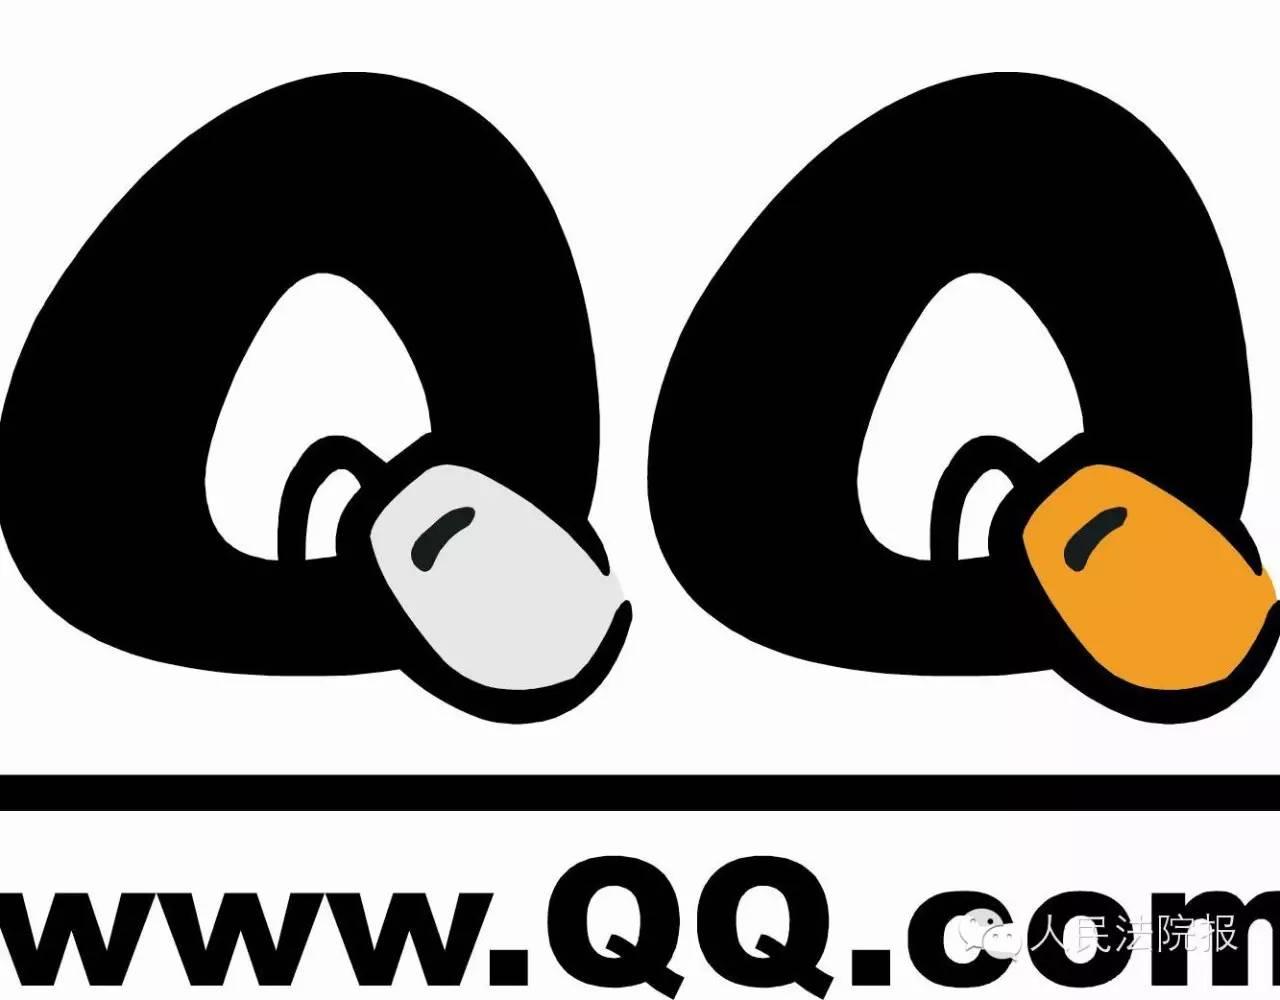 析疑断案qq账号不可作为遗产继承